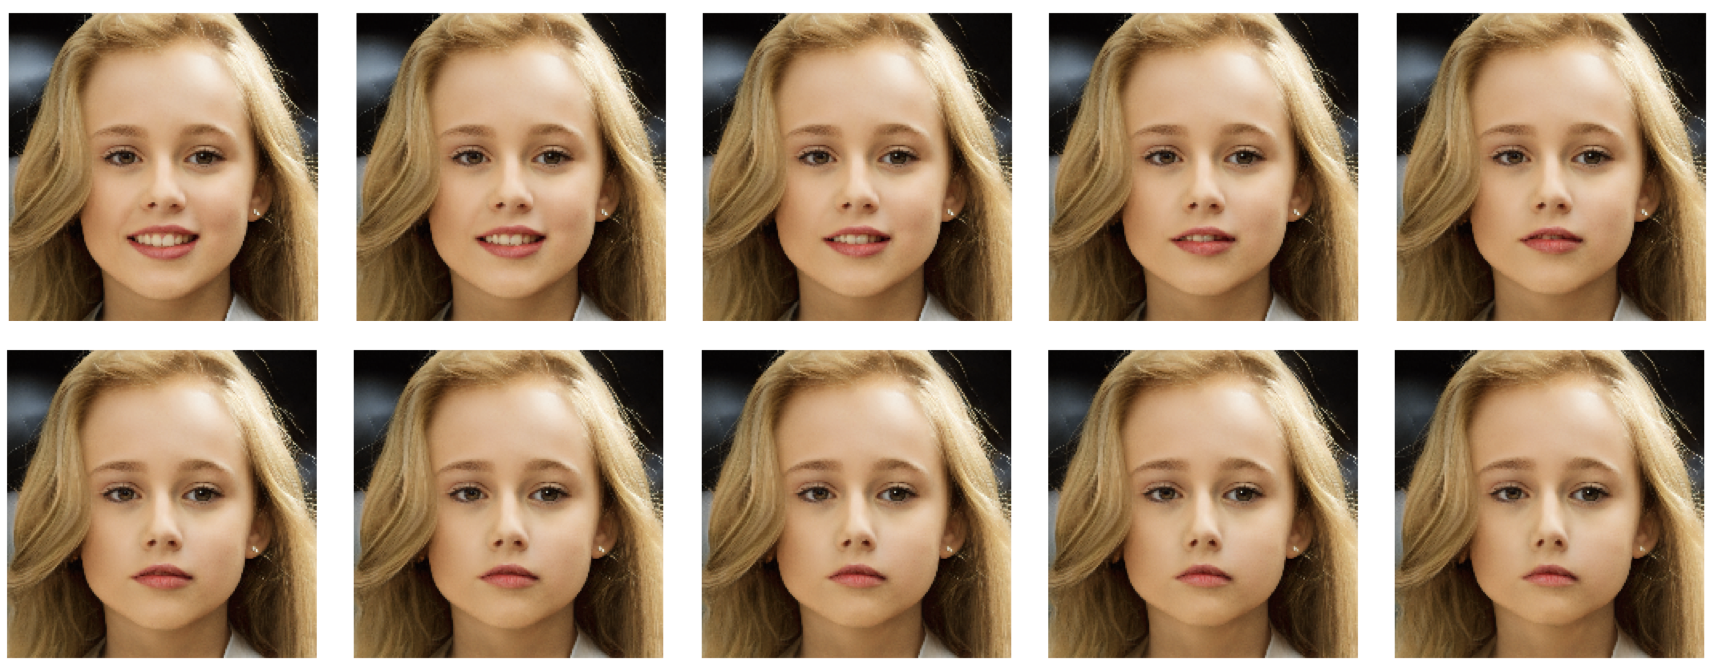 Keyframe Interpolation of a Girl's Face